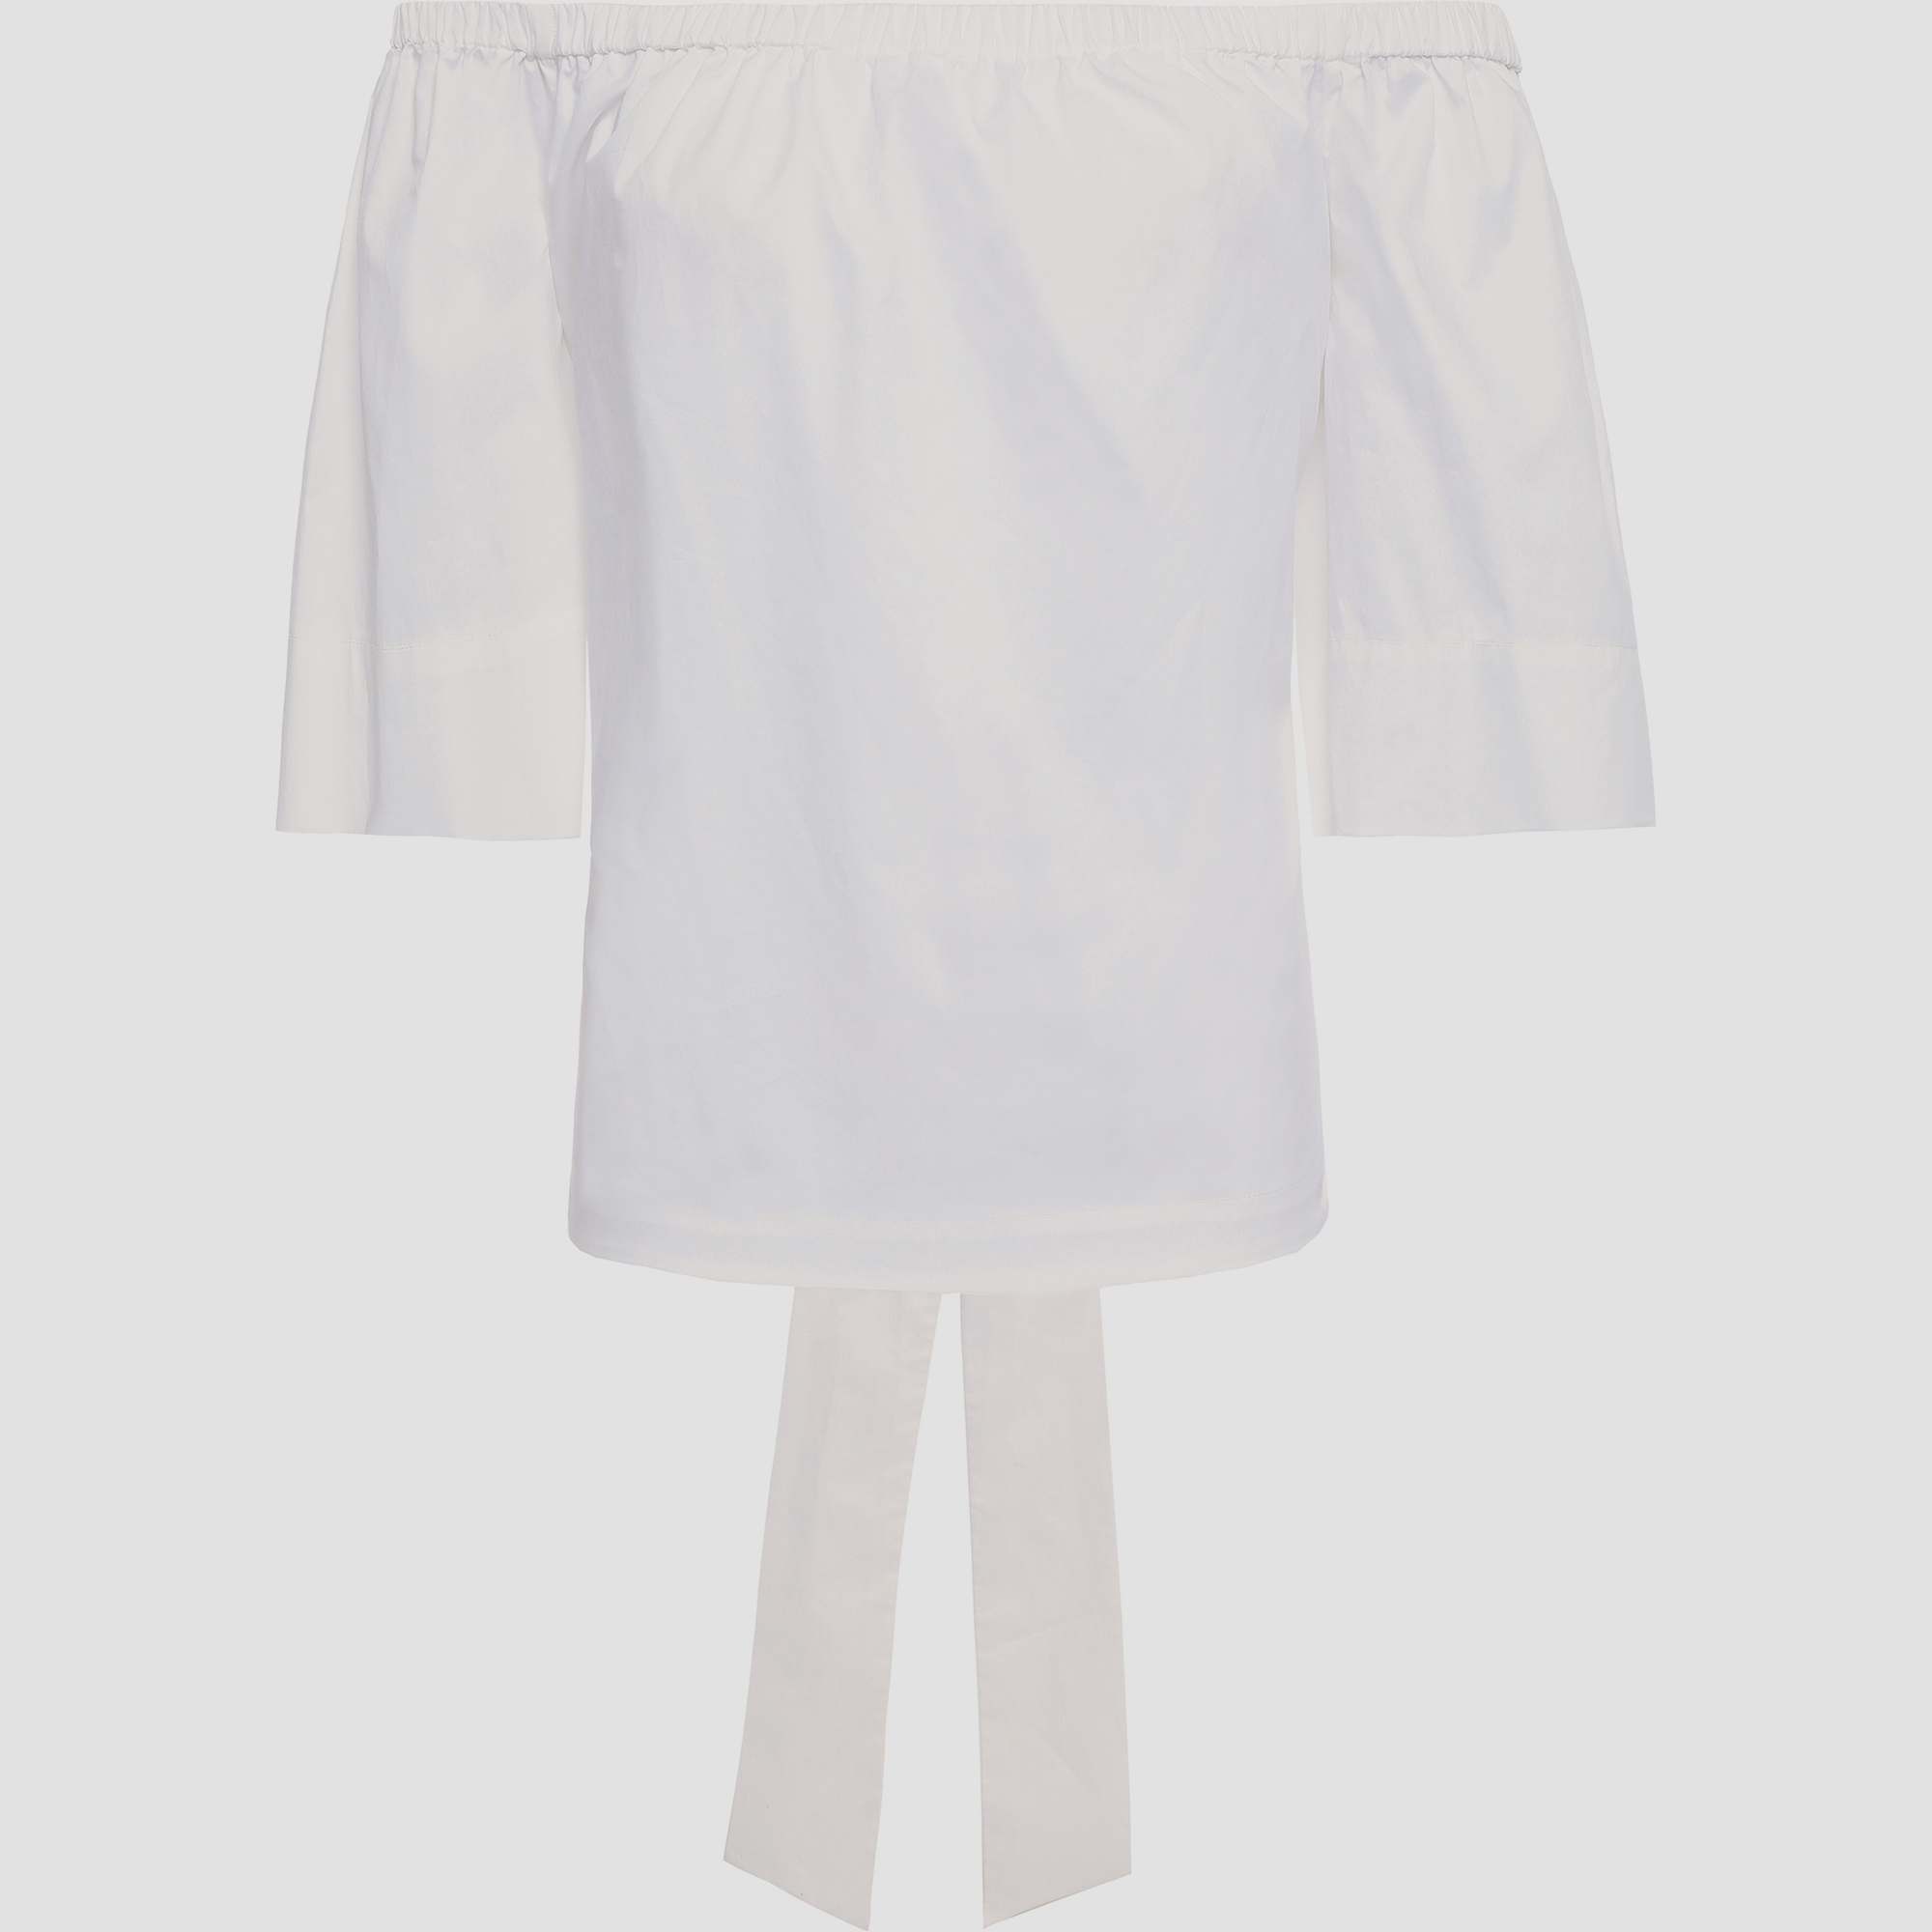 Diane von furstenberg cotton 3 quarter sleeves top xs